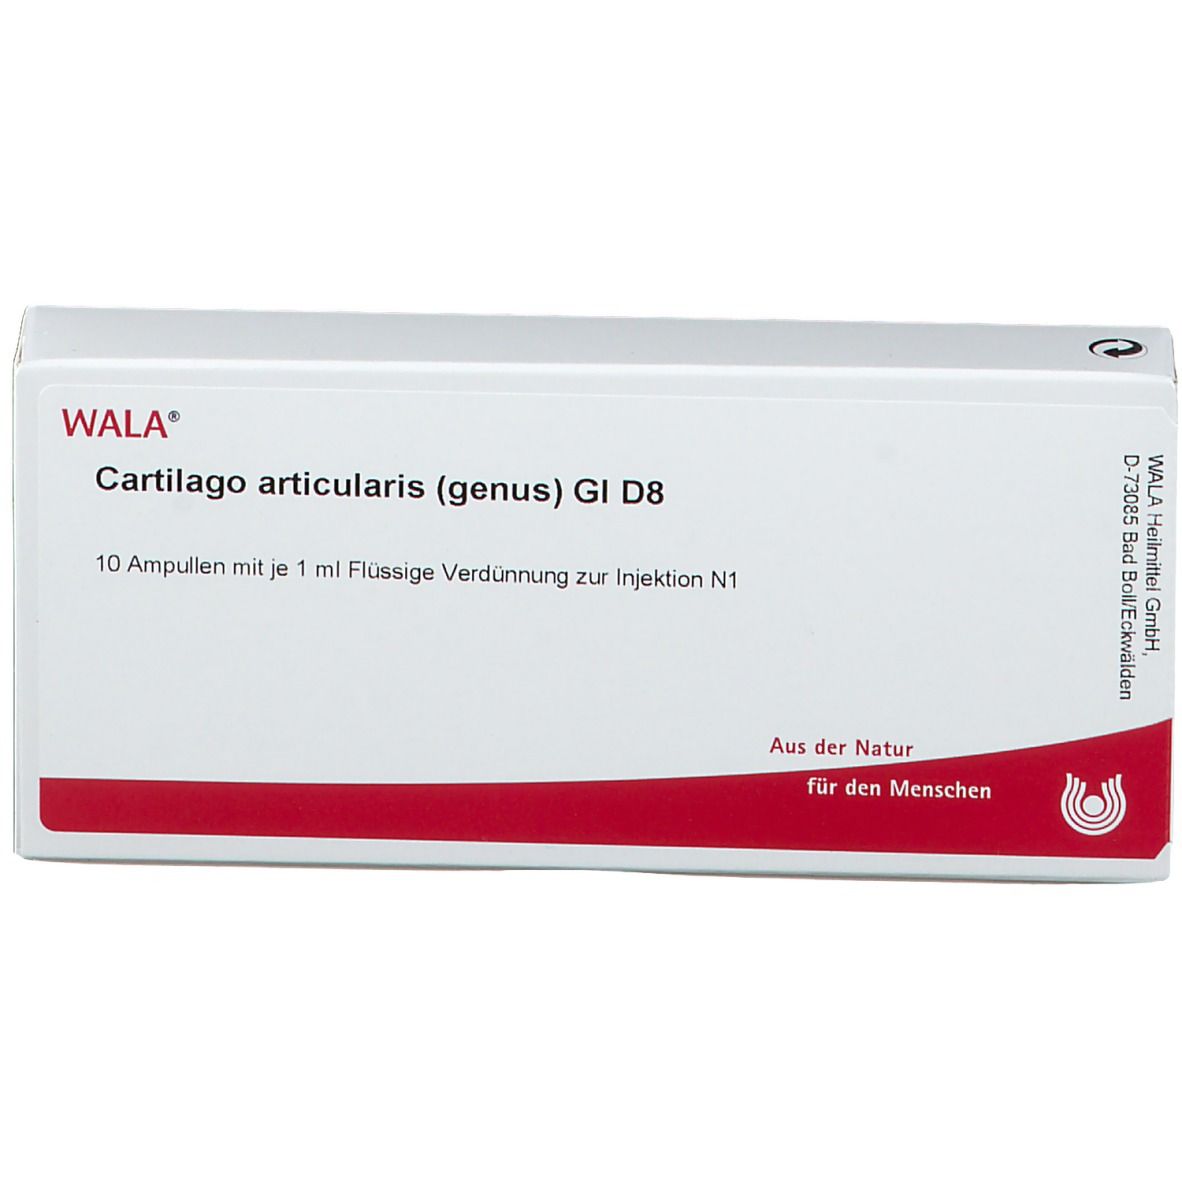 WALA® Cartilago articularis genus Gl D 8